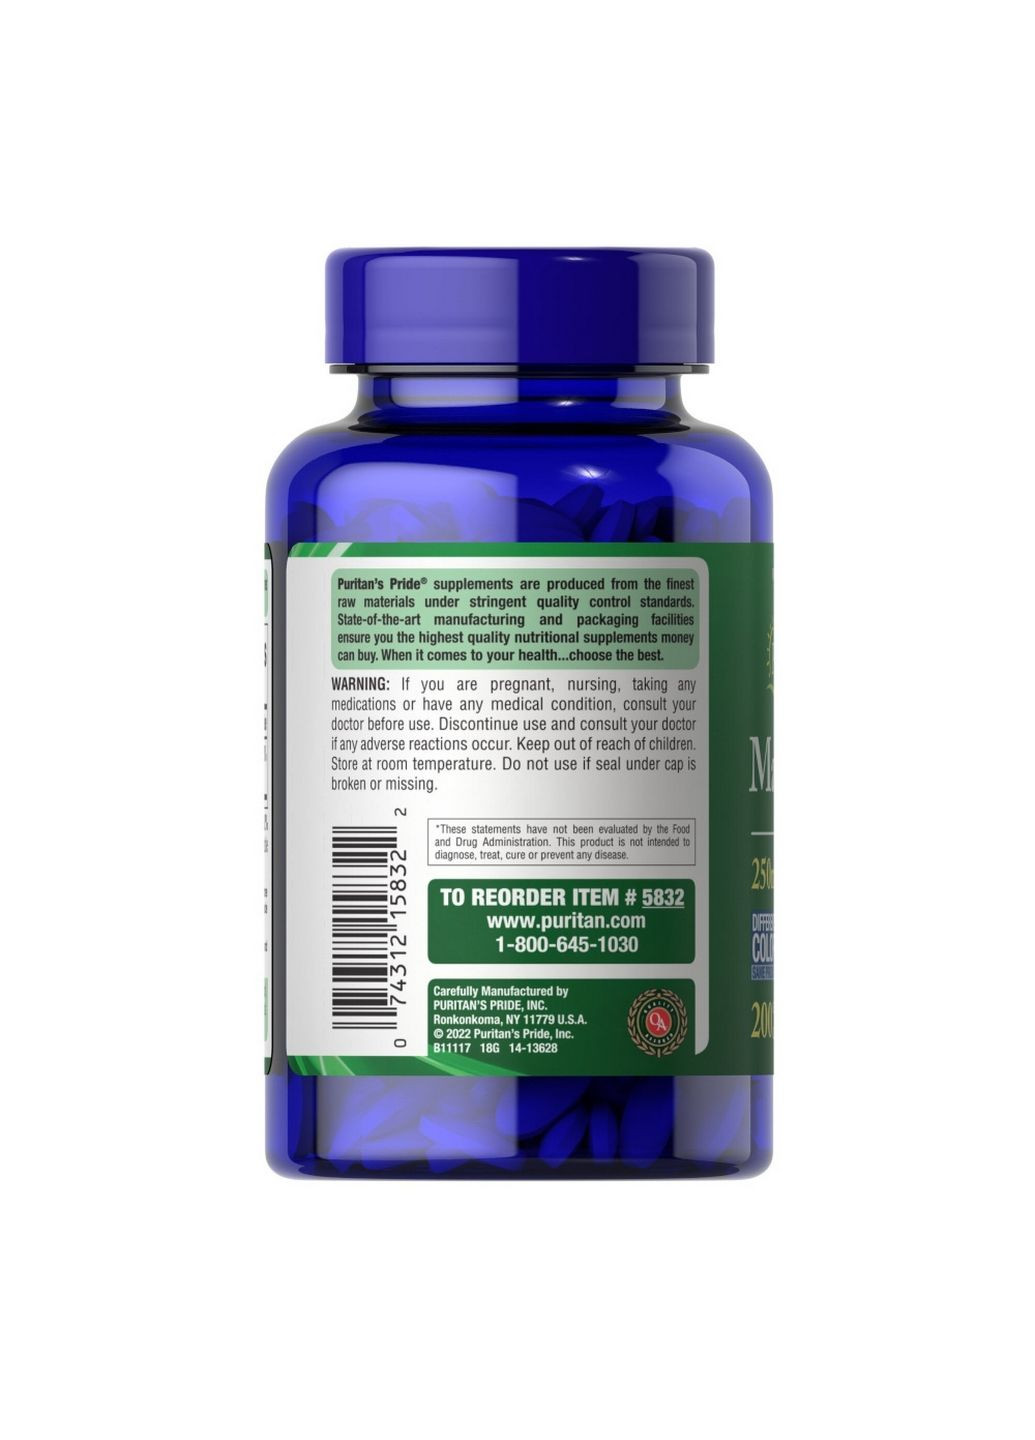 Вітаміни та мінерали Magnesium 250 mg, 200 каплет Puritans Pride (293337952)